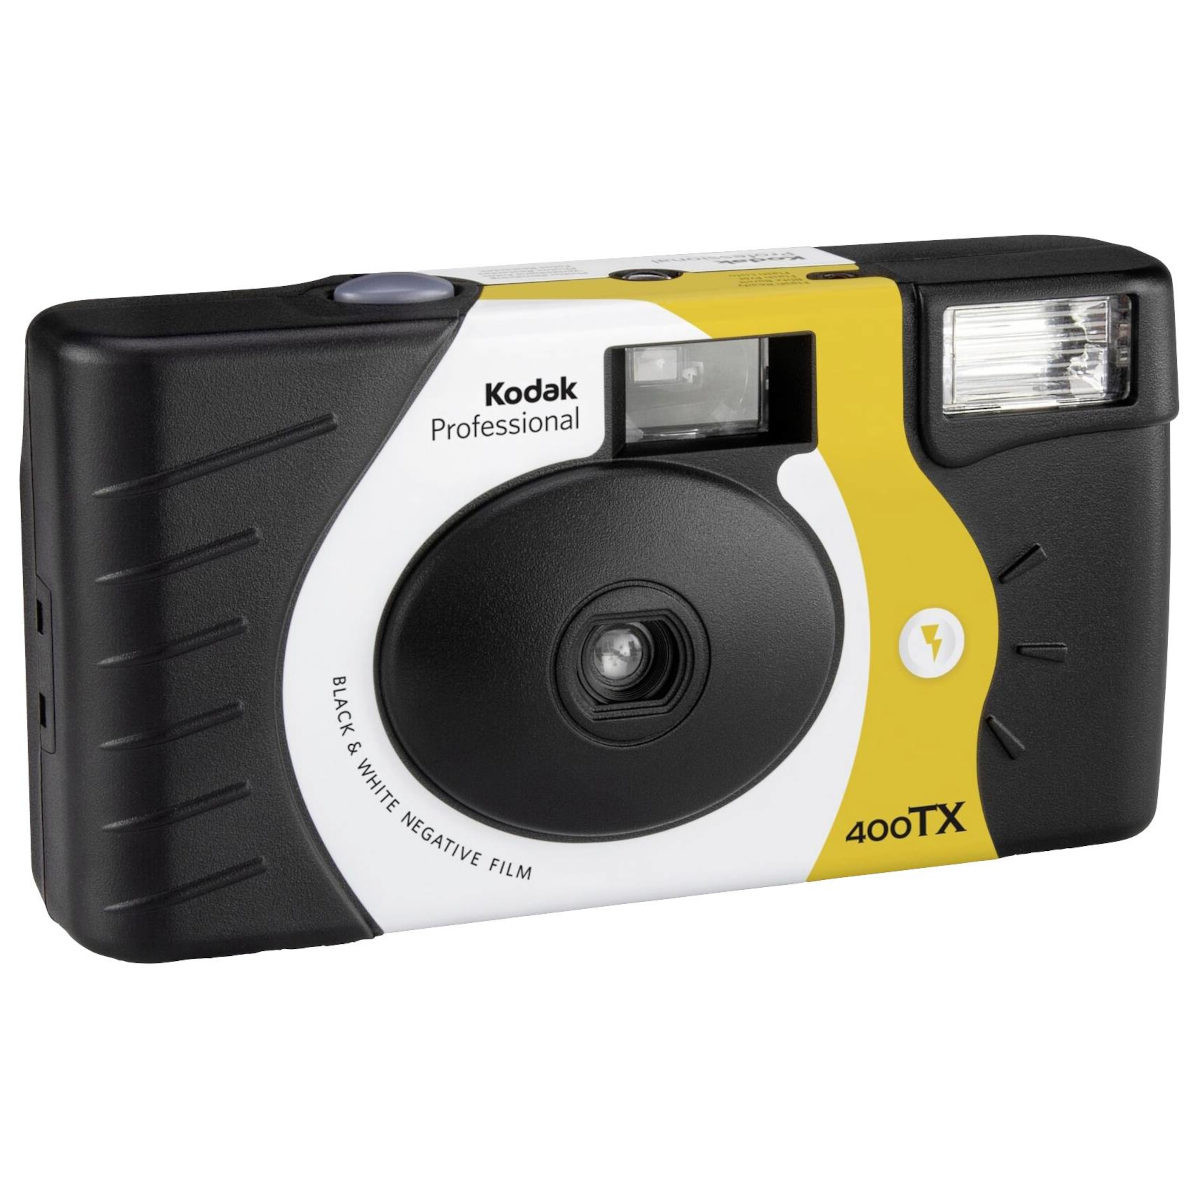 Kodak Professional Tri-X B&W 400 27 Exp Single Use Camera